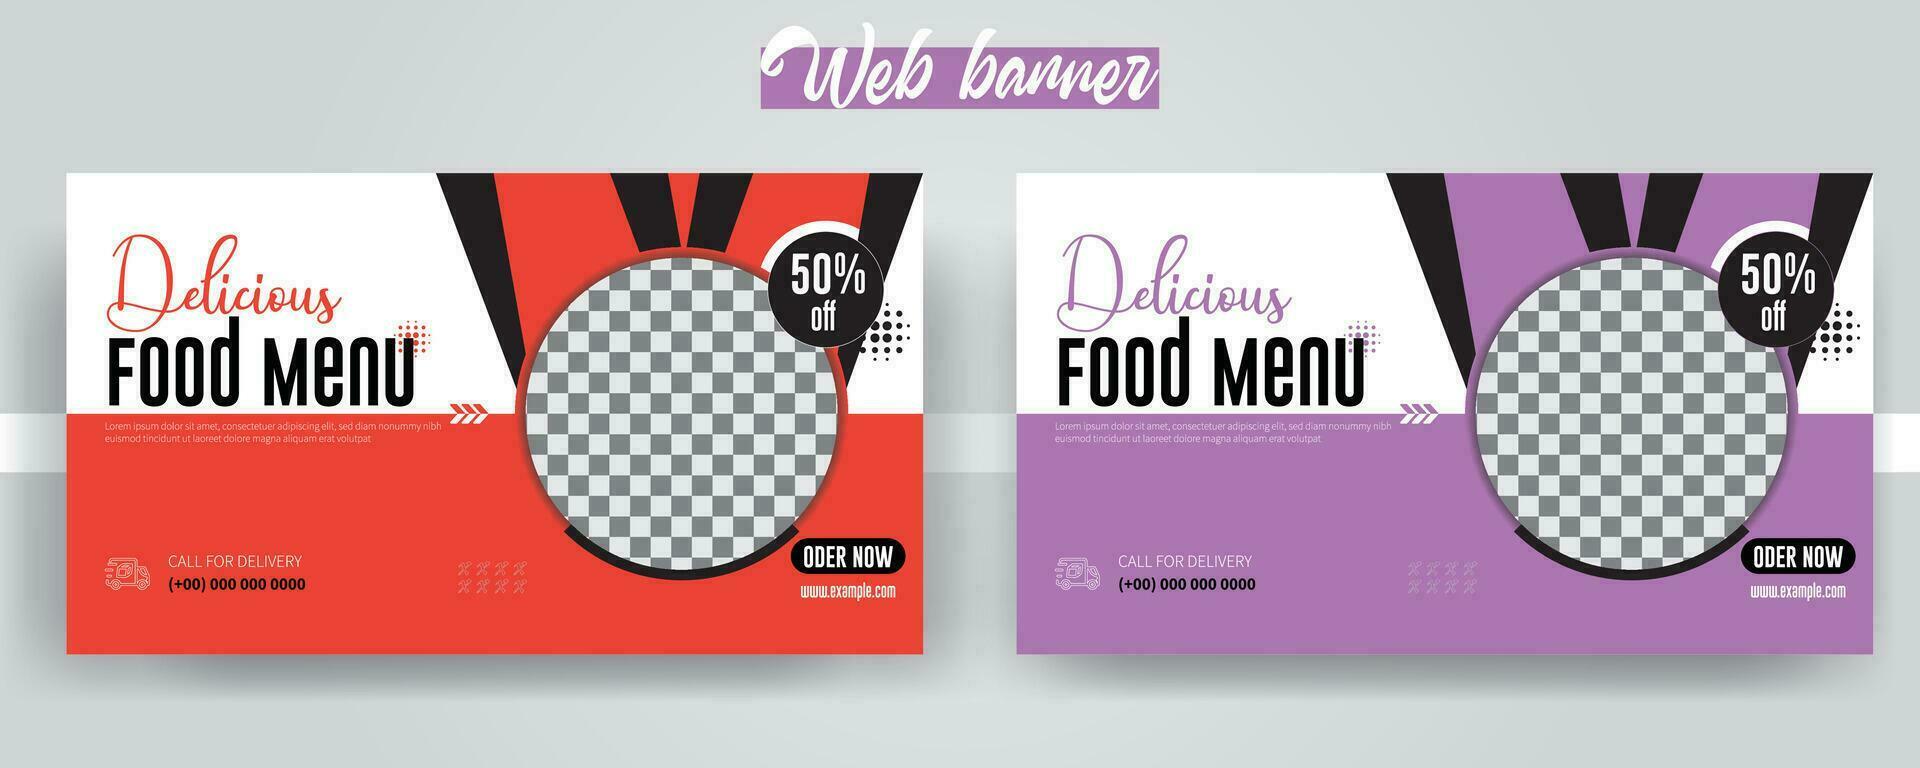 heerlijk voedsel menu web banier sjabloon ontwerp, vers gezond voedsel sociaal media Hoes sjabloon vector met verschillend kleuren. restaurant Promotie web banier ontwerp voor digitaal marketing.